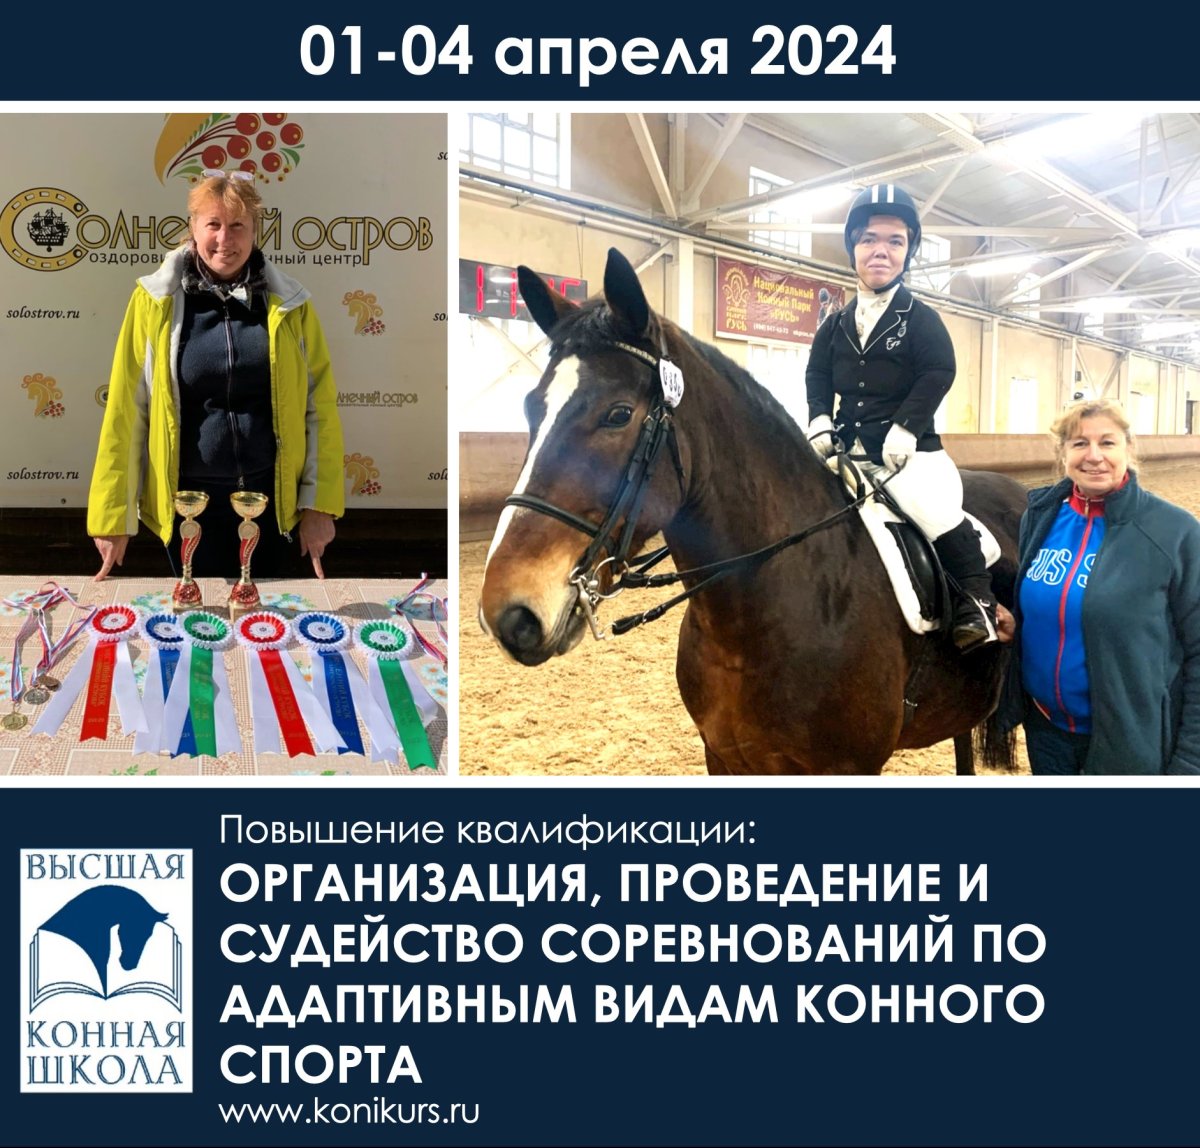 Ольга Сочеванова расскажет как проводить соревнования для особенных спортсменов